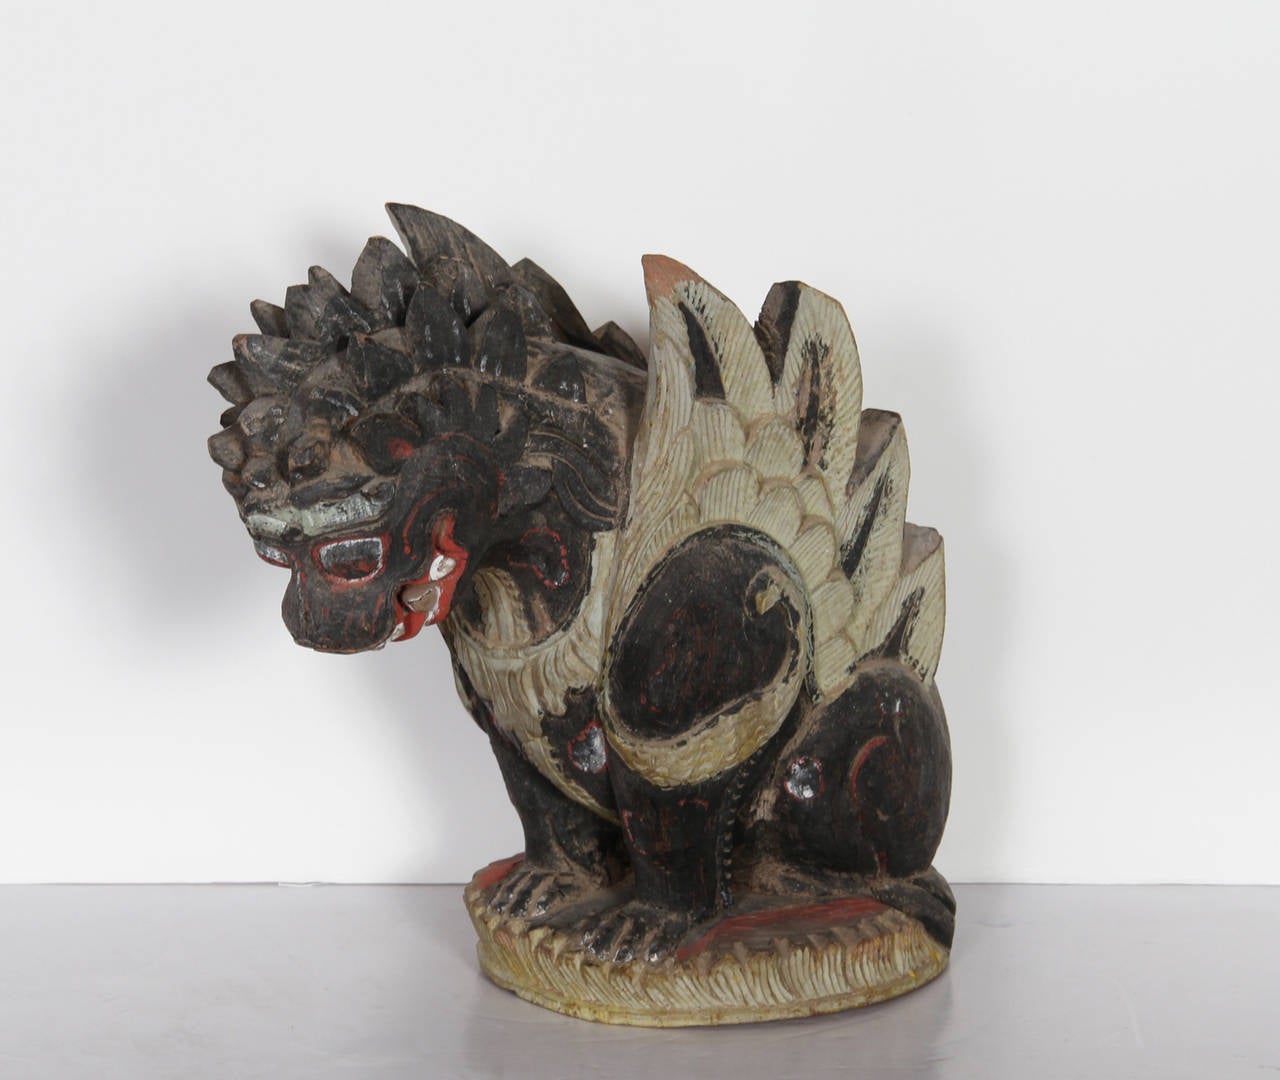 Unknown Figurative Sculpture – Chinesischer Drache, Skulptur, frühes 20. Jahrhundert